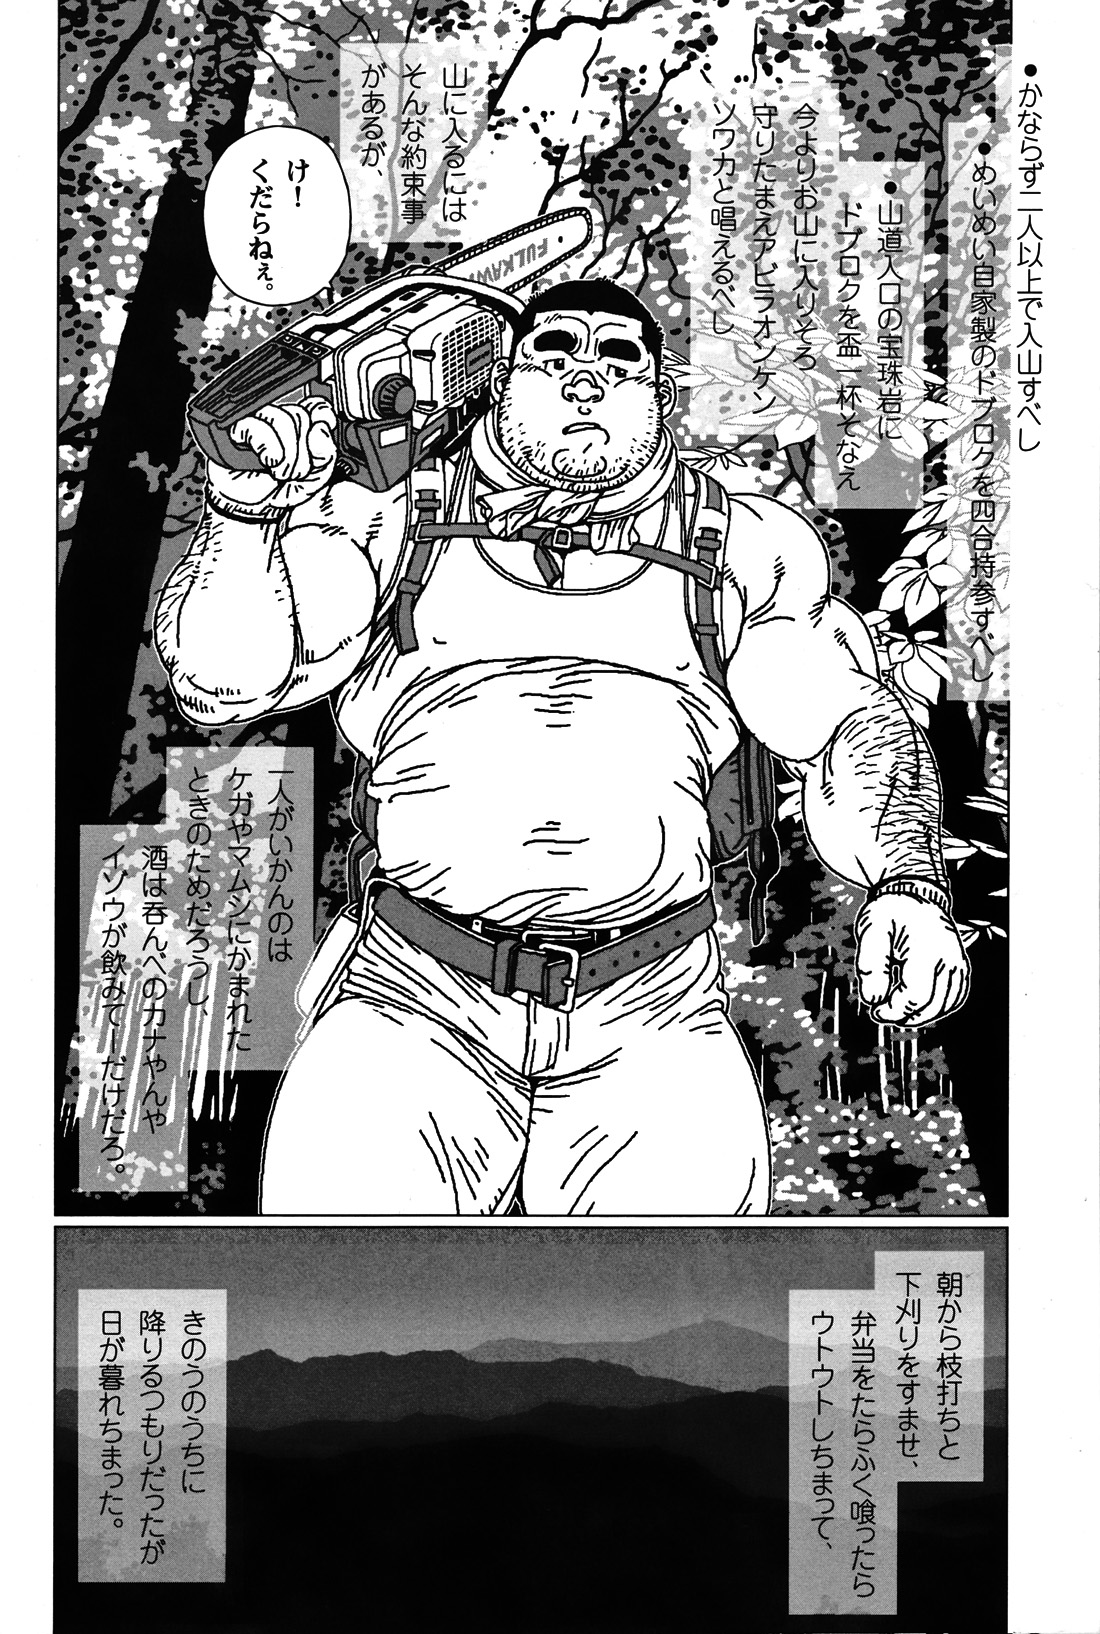 Comic G-men Gaho No. 06 Nikutai Roudousha page 3 full